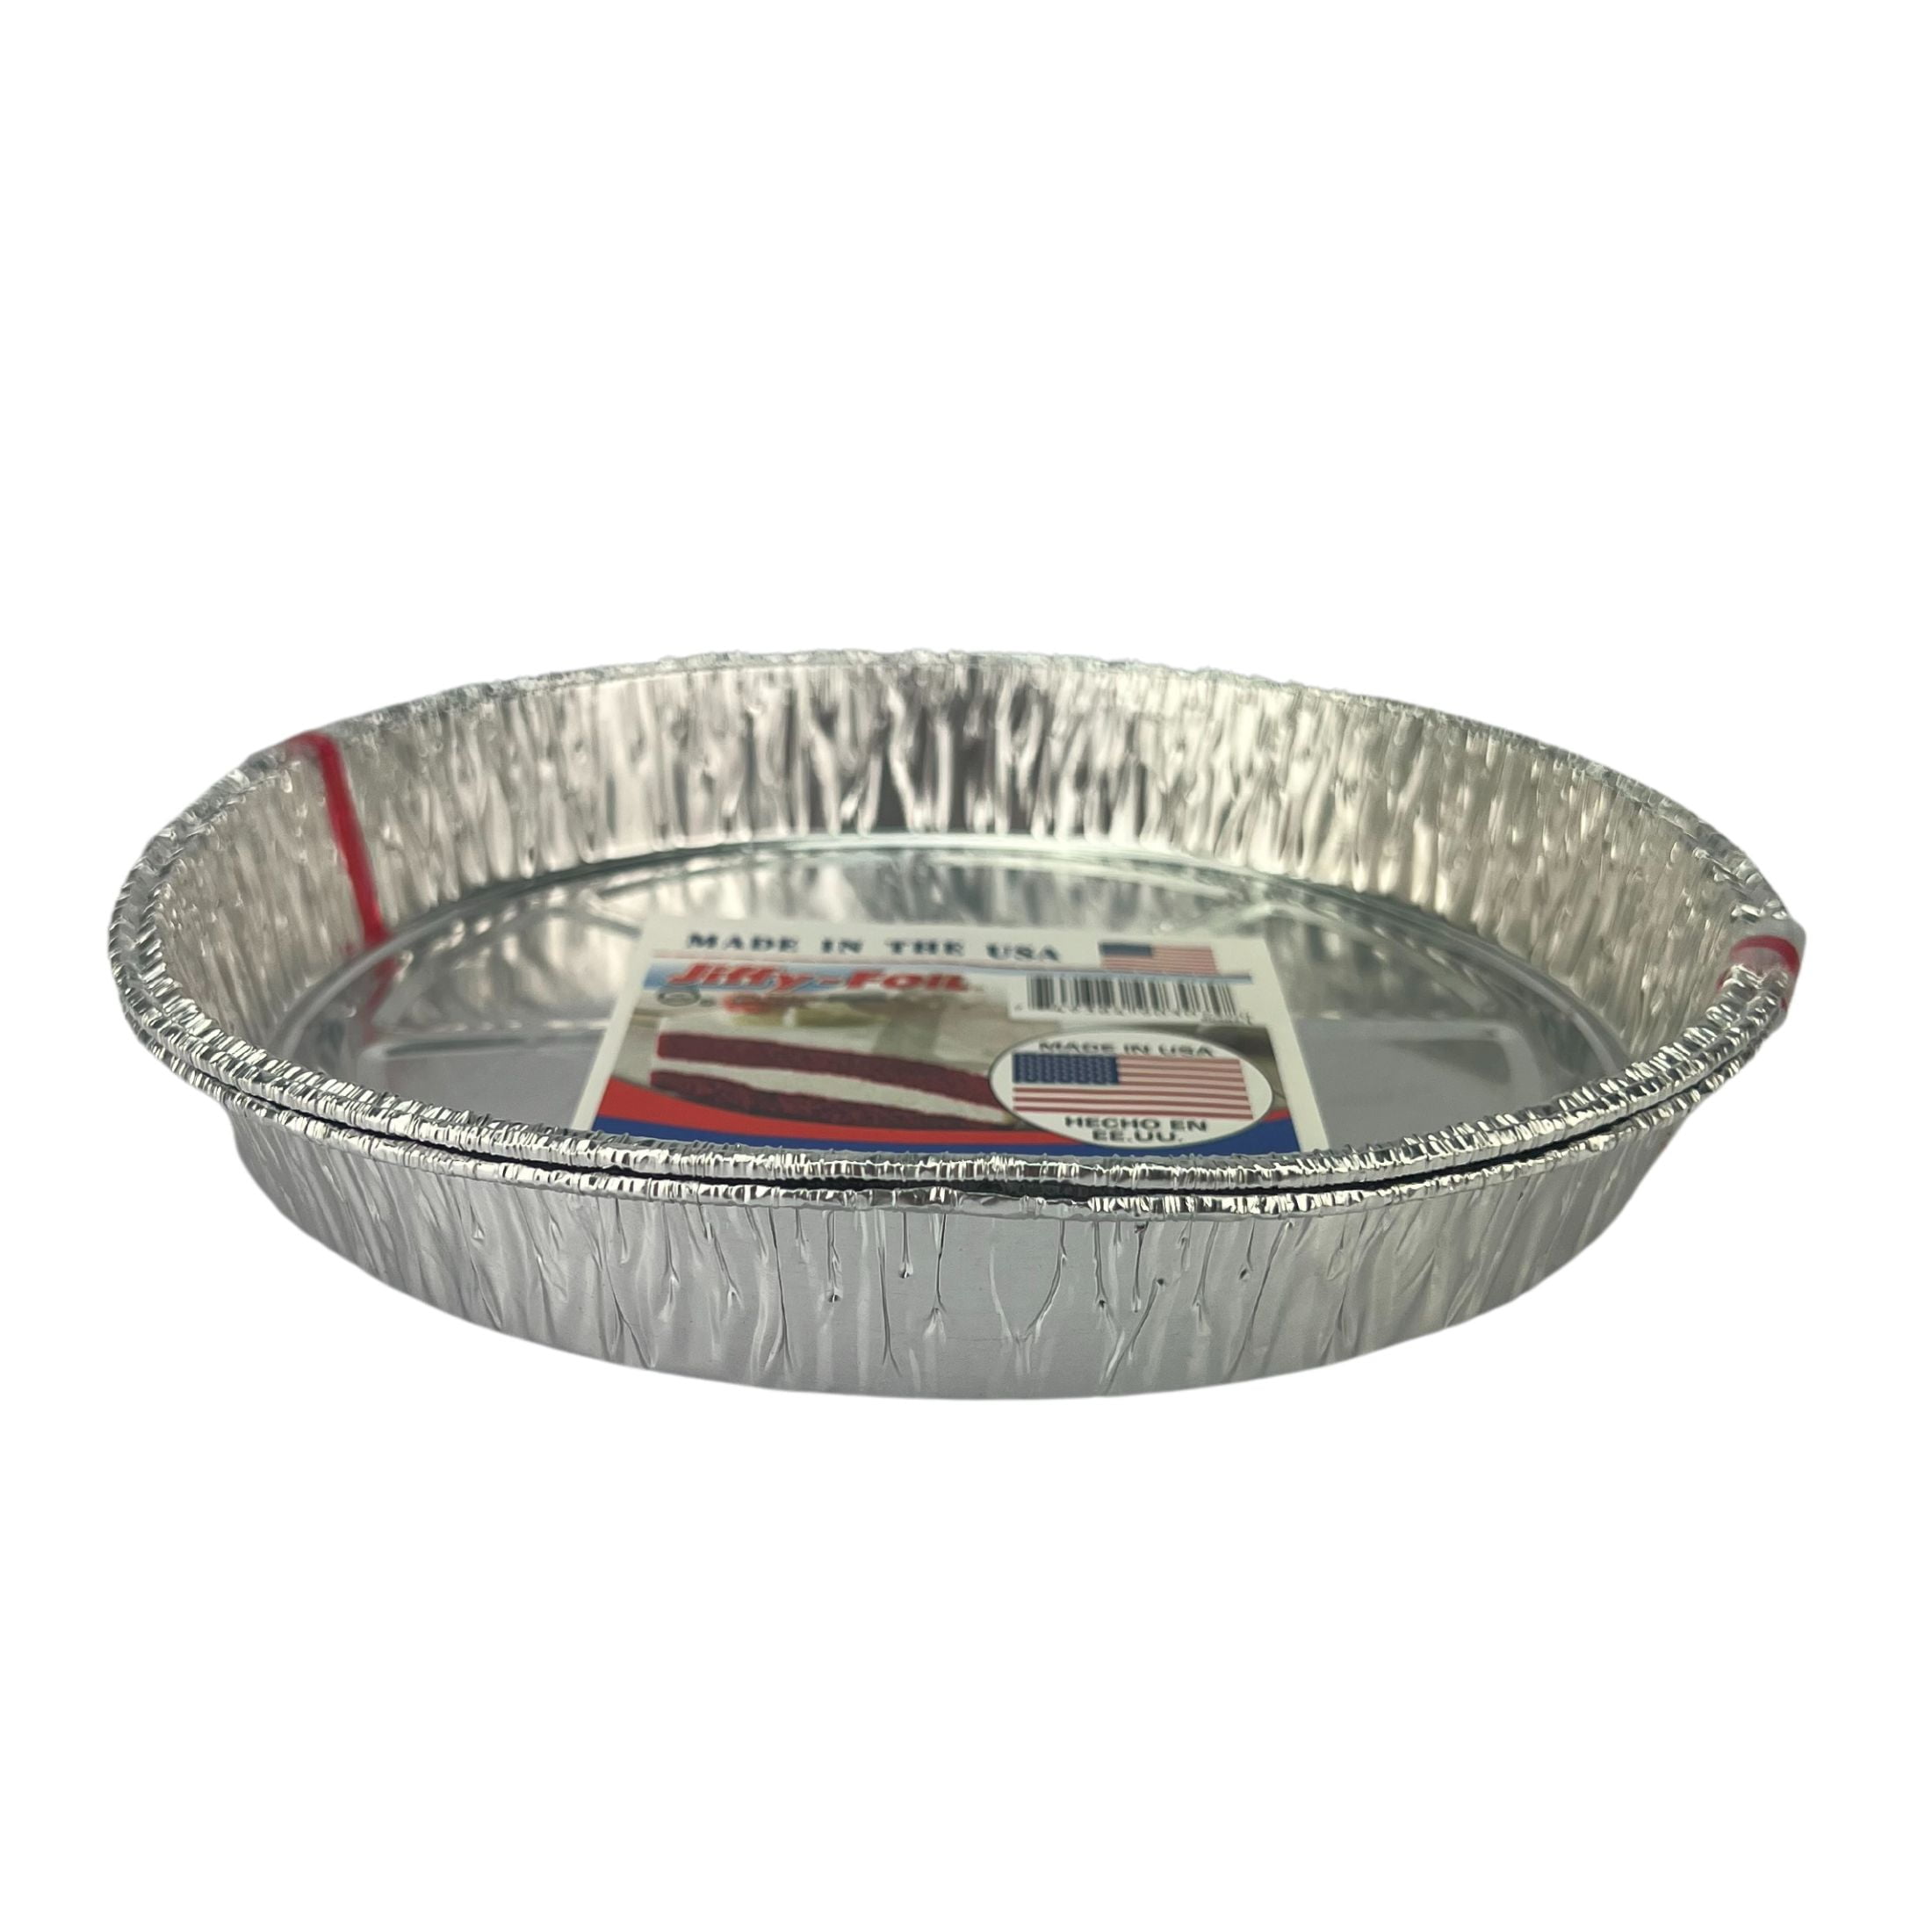 Jiffy-Foil Aluminum Foil Disposable Muffin Pans, 2 Piece 